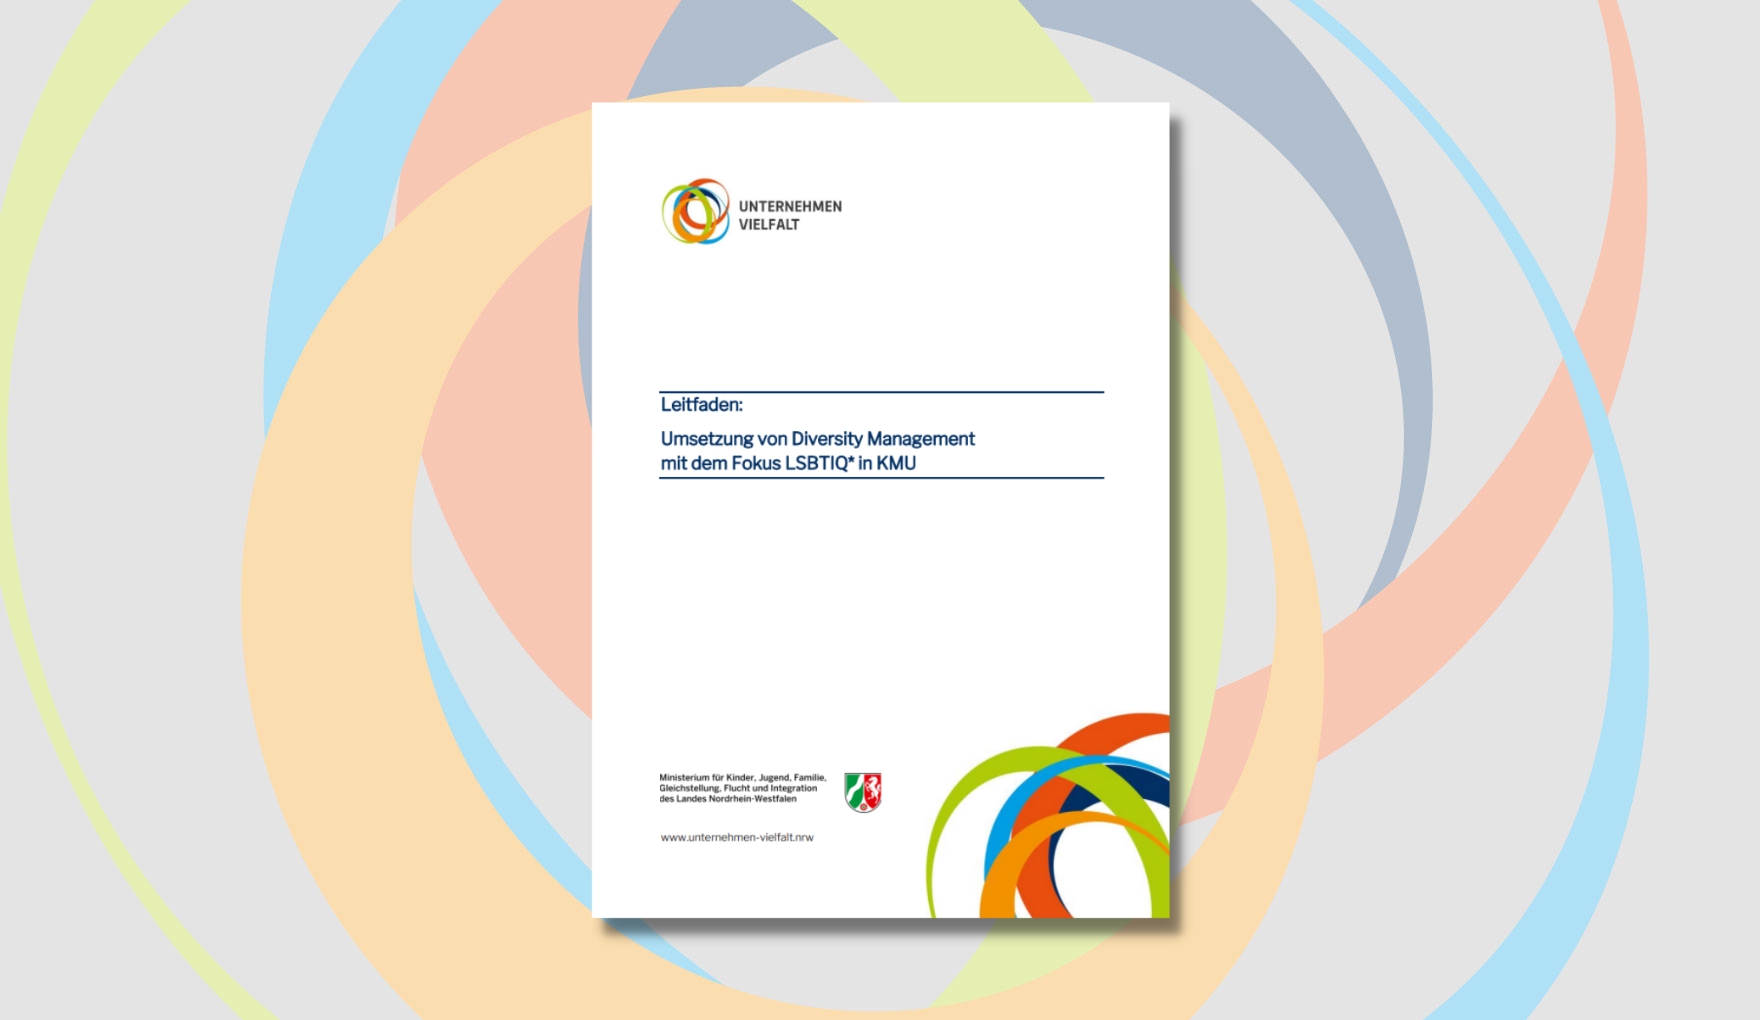 Deckblatt "Leitfaden: Umsetzung von Diversity Management mit dem Fokus LSBTIQ* in KMU" mit dem Titelschriftzug und den Logos der Netzwerkstelle sowie des Ministeriums